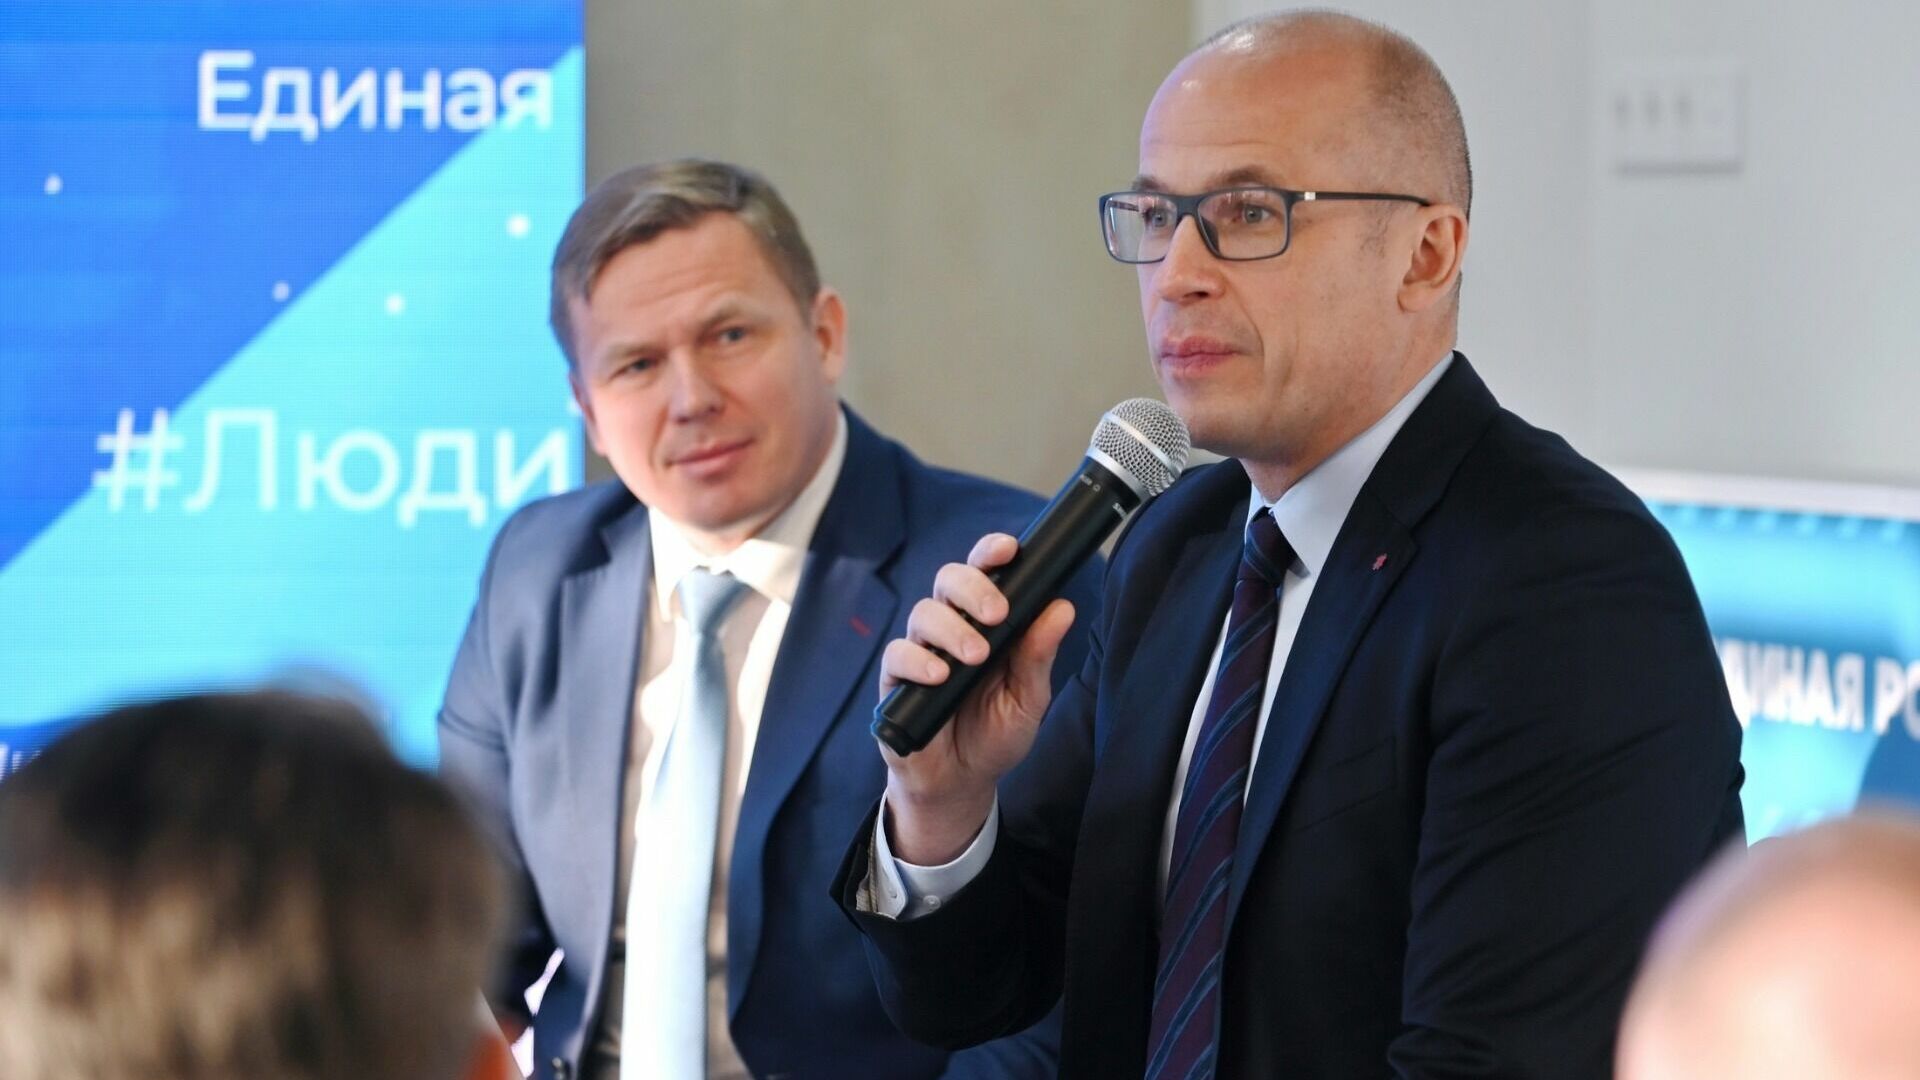 Александр Бречалов вошел в ТОП-10 худших губернаторов по версии центра «Рейтинг»